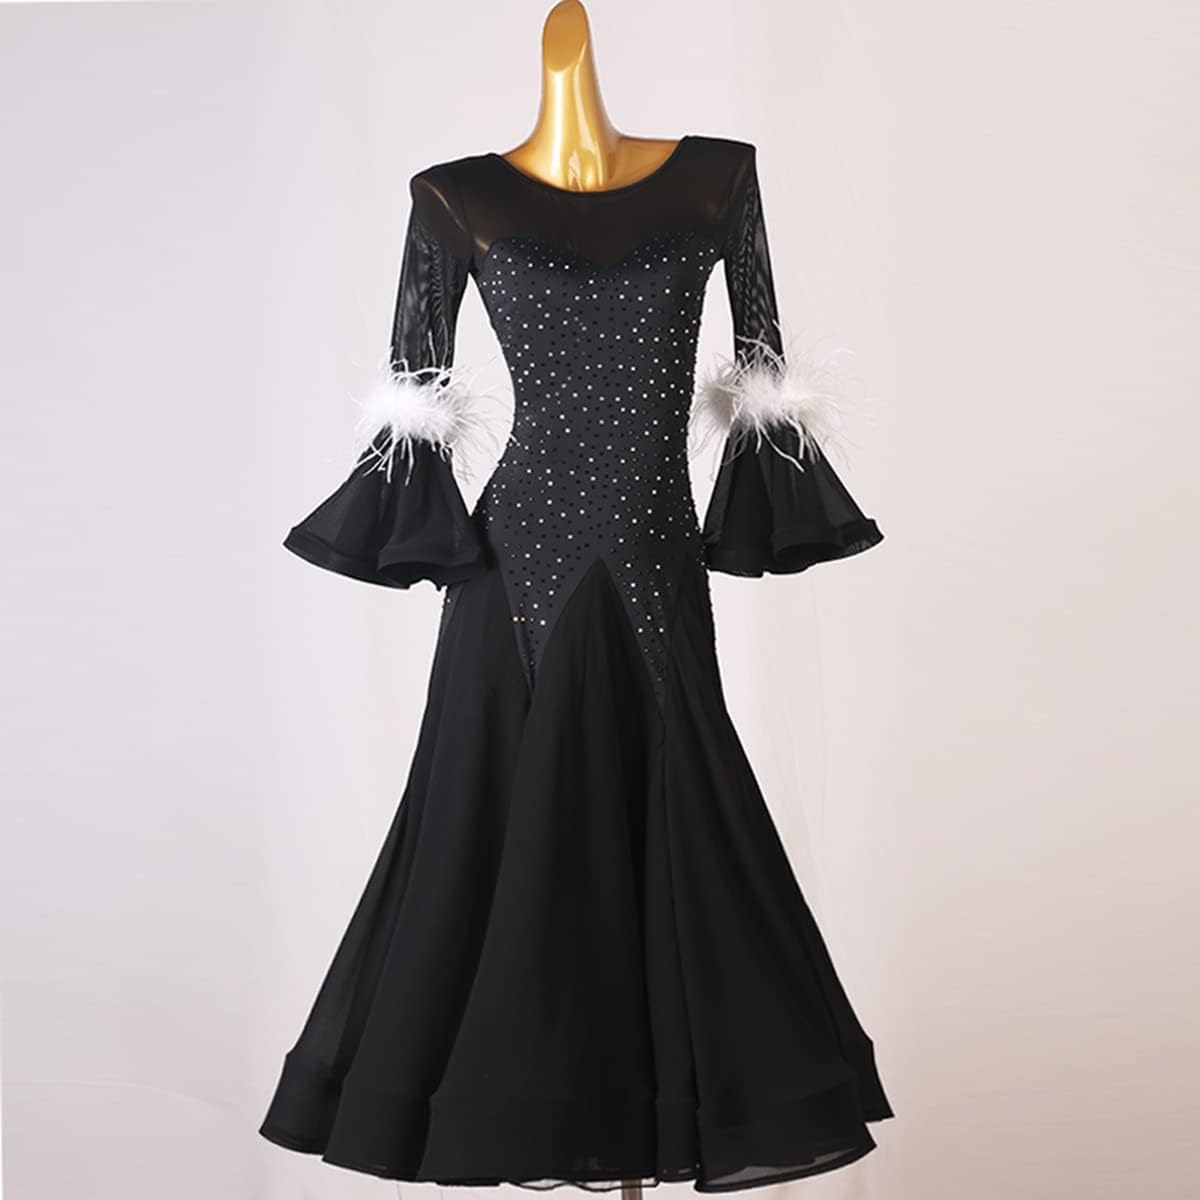 Women's National Standard Dance Dress Summer Modern Waltz Standard Dress Ballroom Black Dresses Competition Costumes